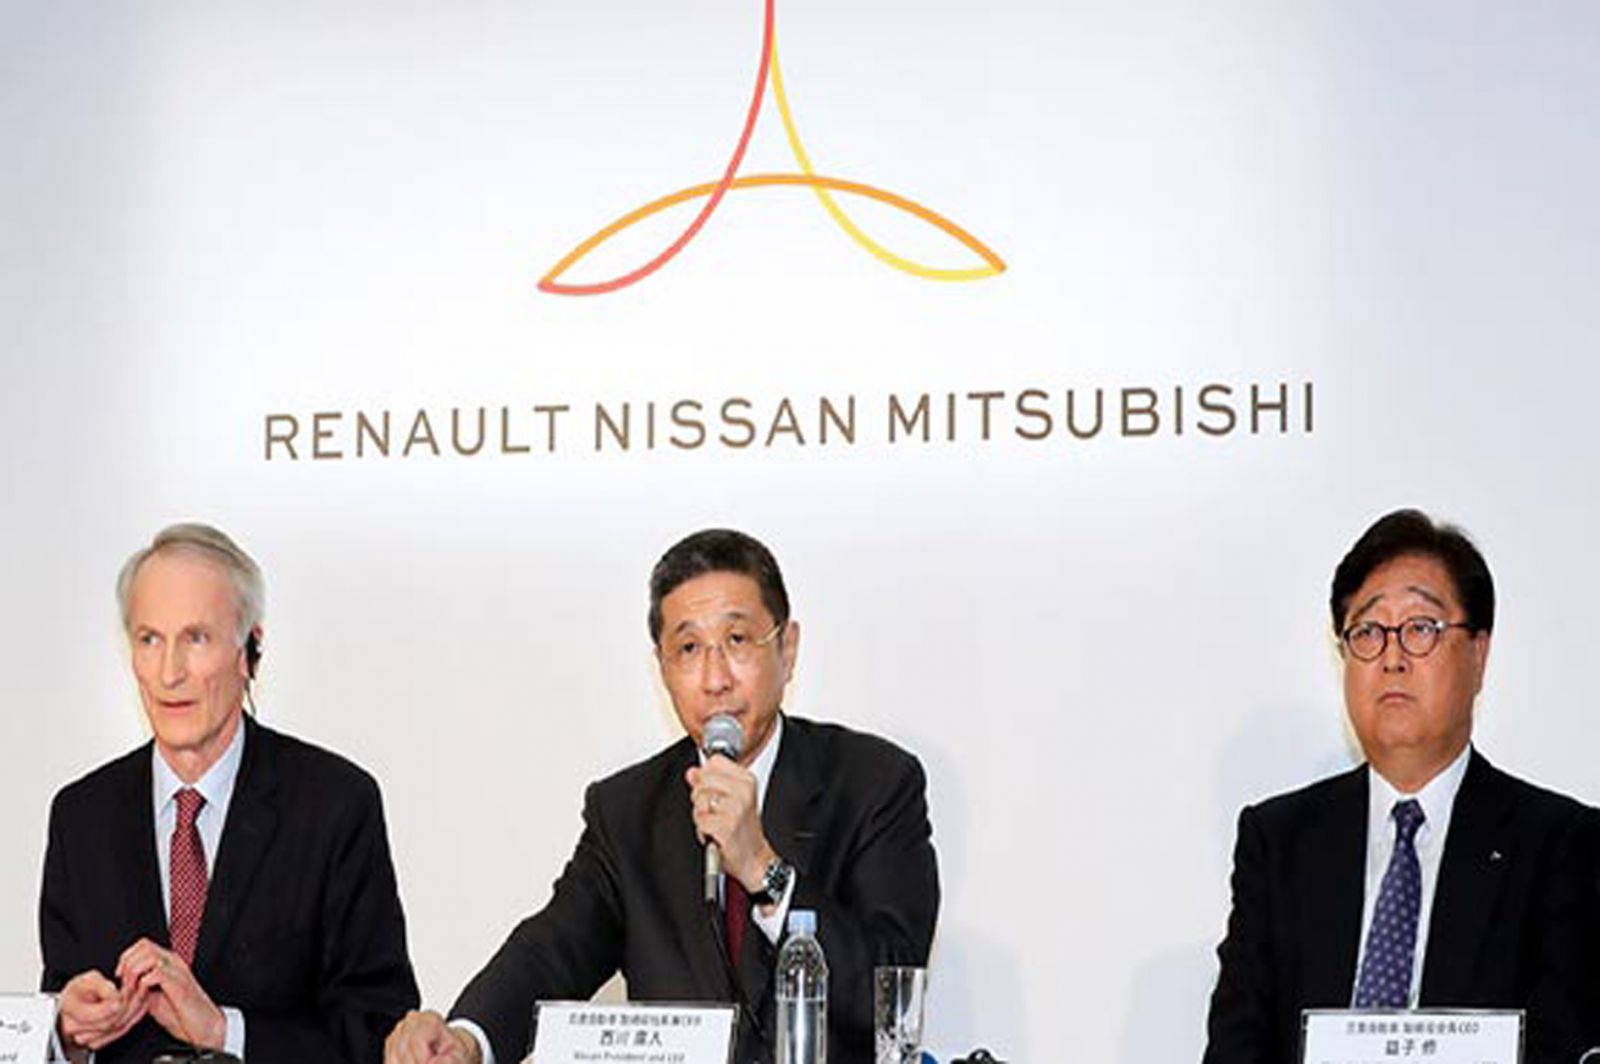  Liên minh ô tô Renault – Nissan – Mitsubishi đã xuất hiện ở hơn 200 quốc gia với 10 thương hiệu. (Ban điều hành của Liên minh Renault – Nissan – Mitsubishi. Ảnh: UPI)